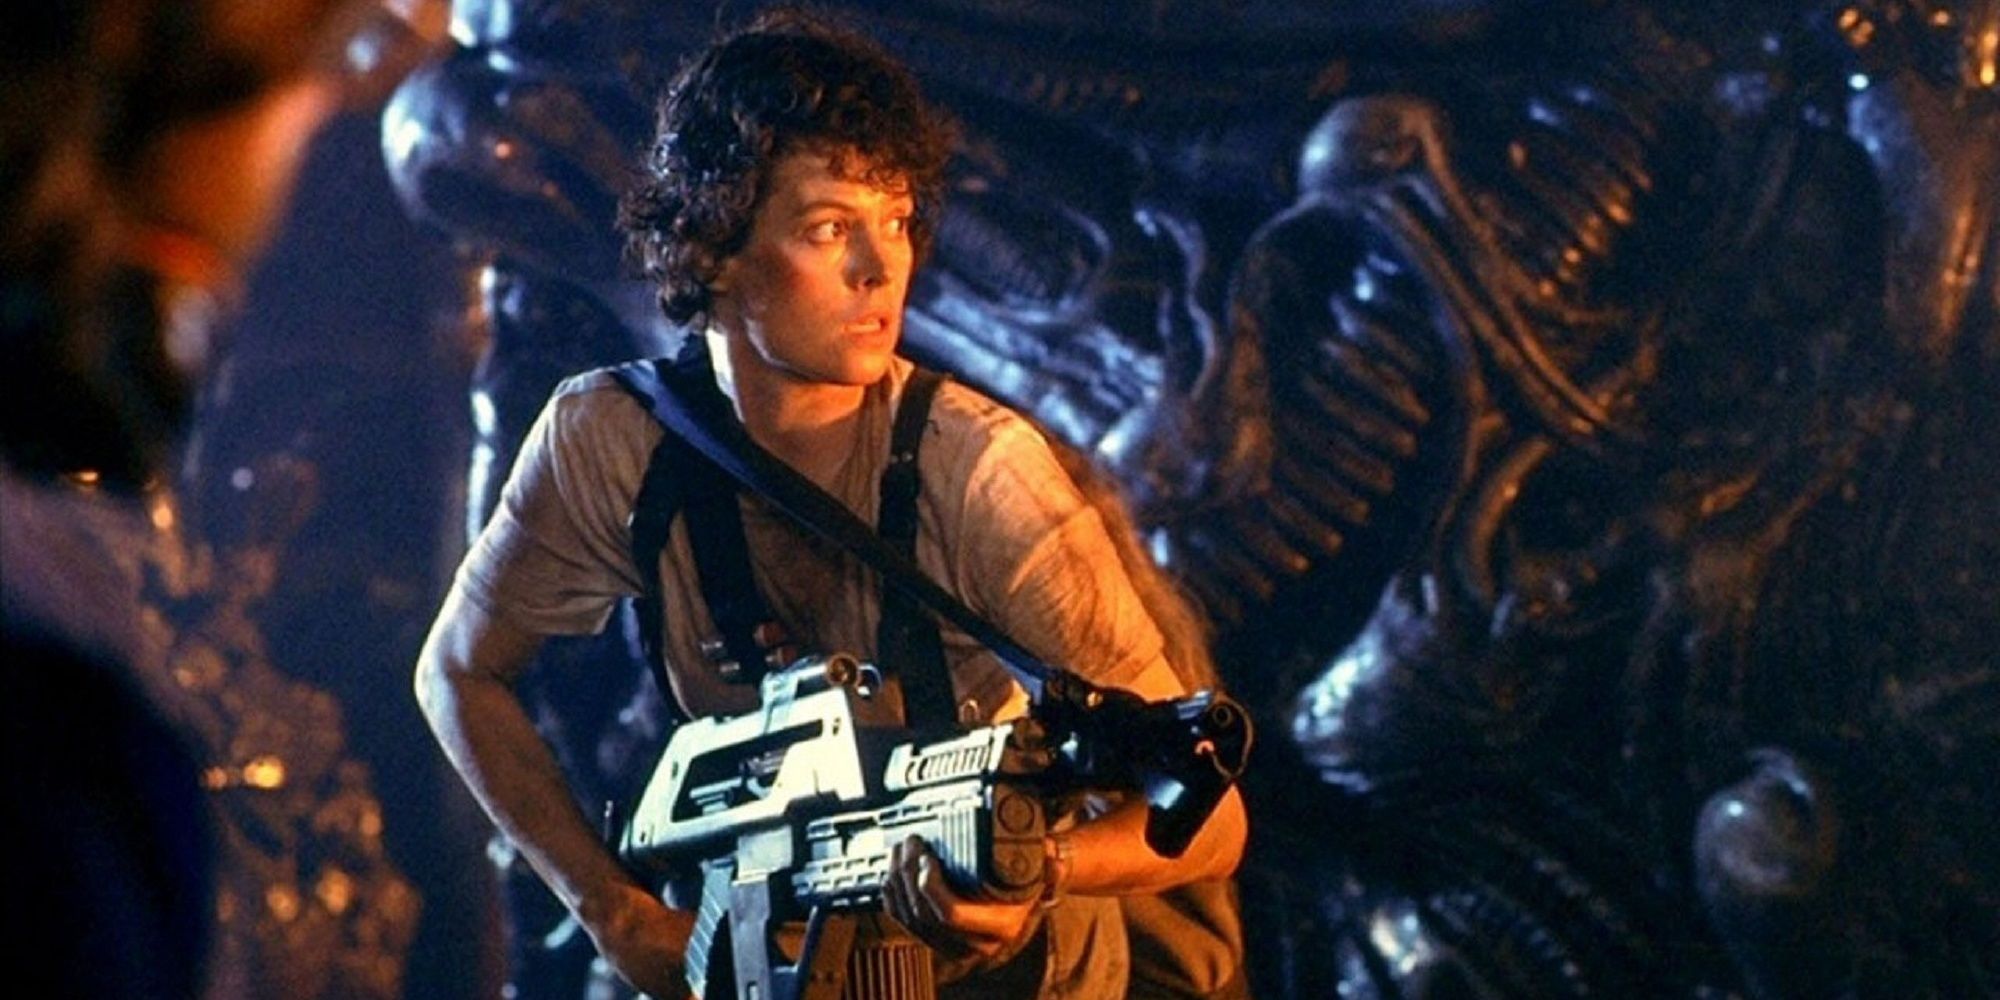 Aliens - Ellen Ripley holding a weapon